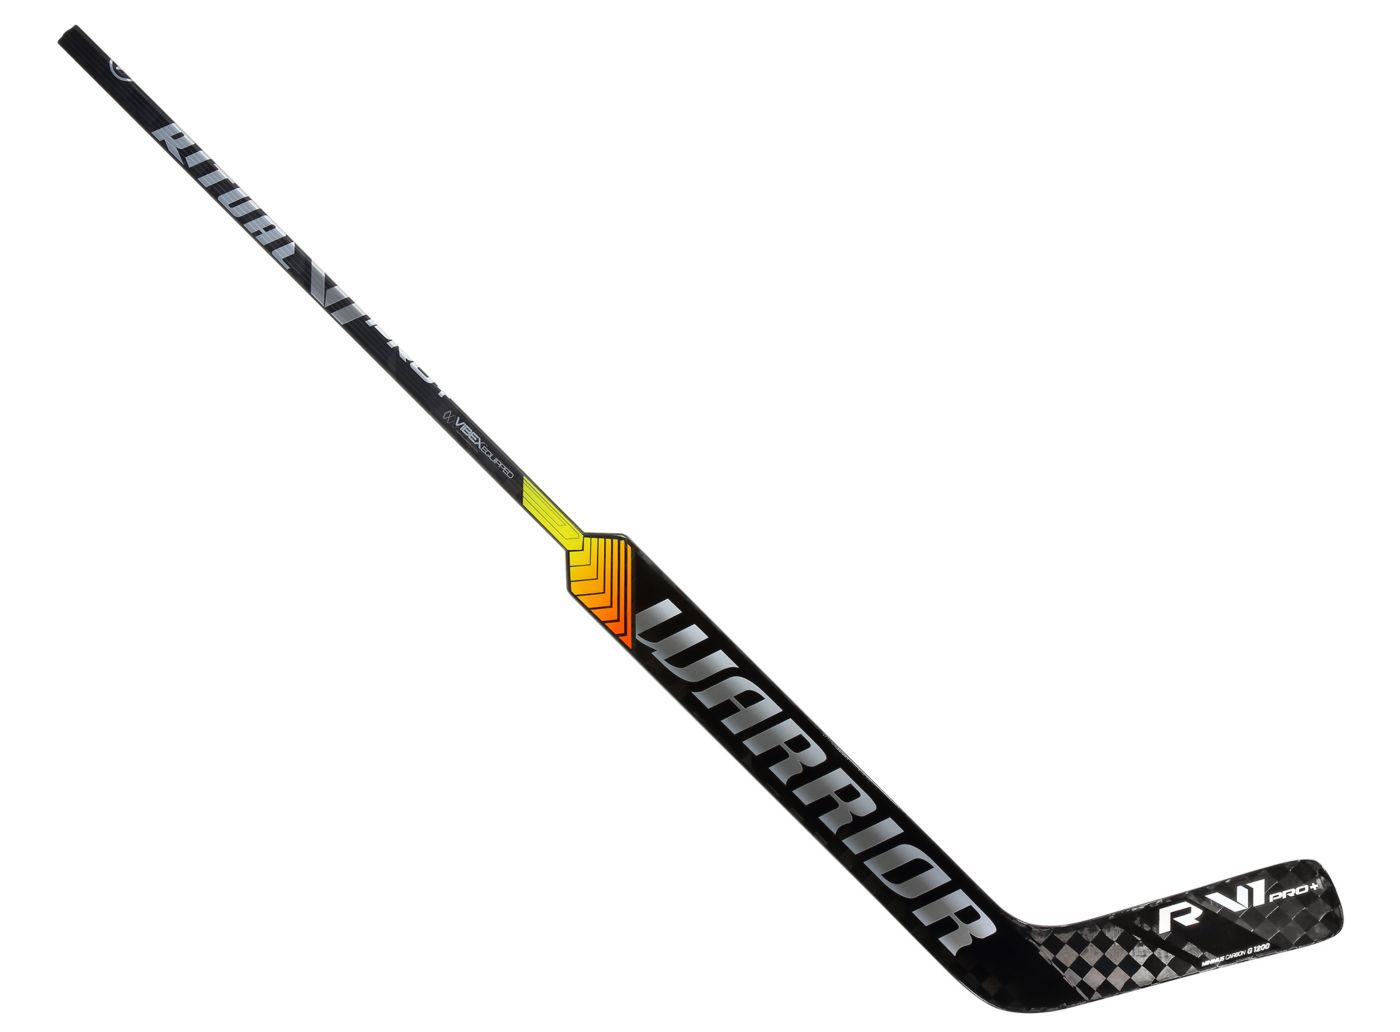 New 2 Pack of Warrior Abyss Sr ice hockey goalie sticks senior wood goal stick 